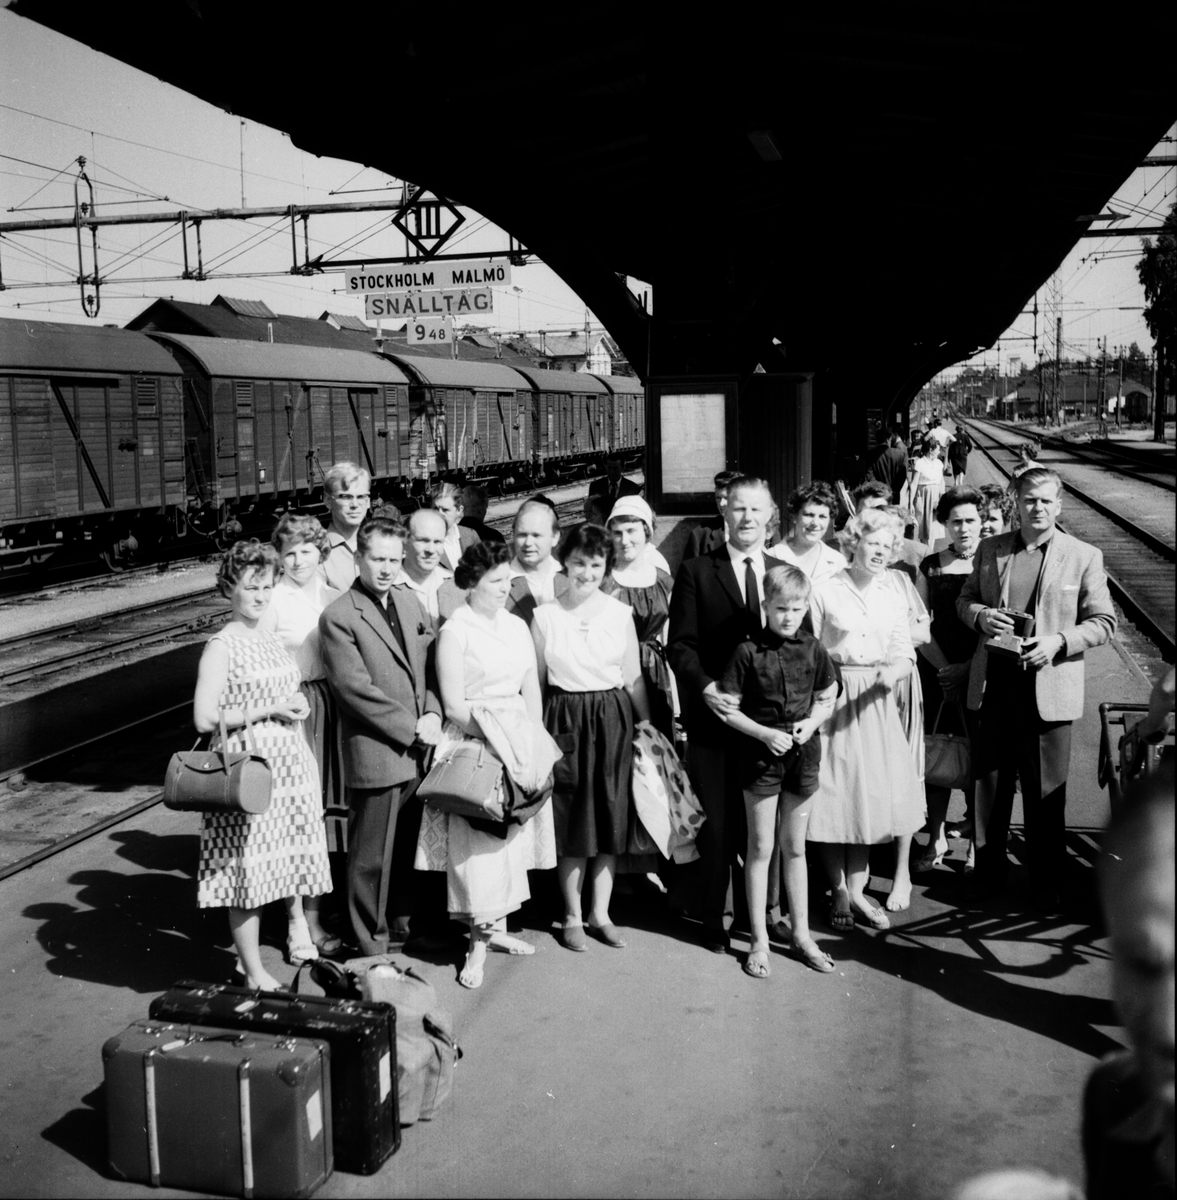 Gruppresa till Bretange
25/7 1959